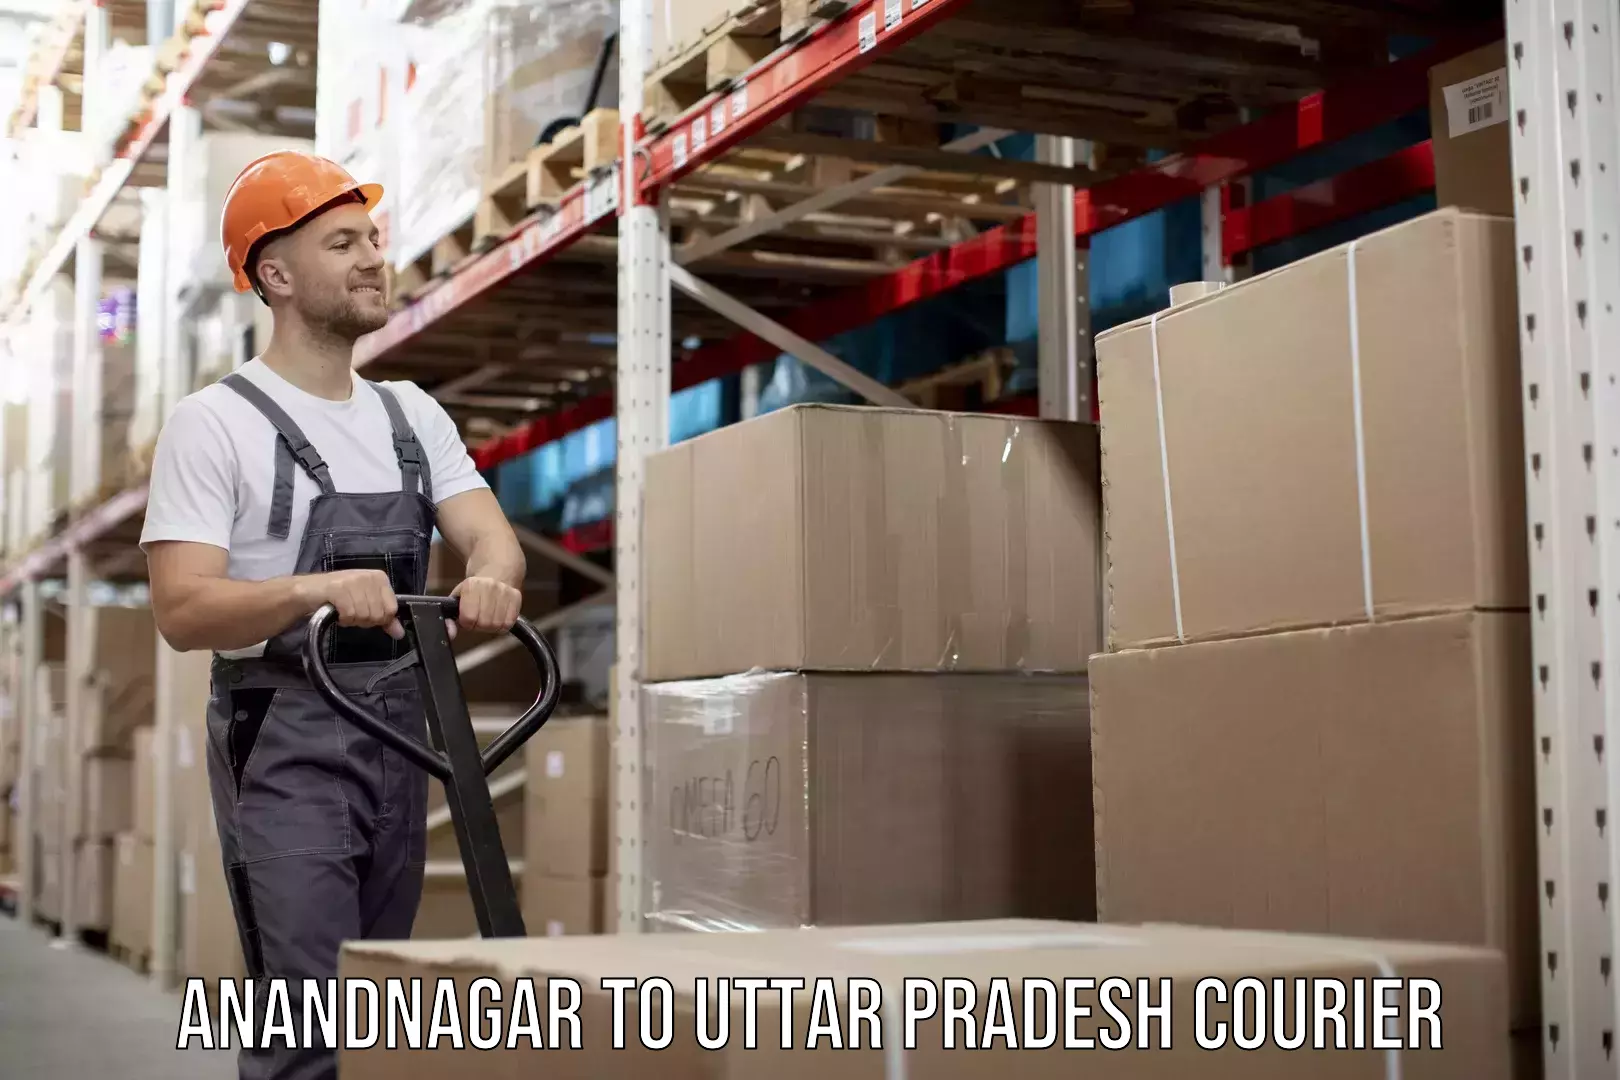 Sustainable courier practices Anandnagar to Uttar Pradesh